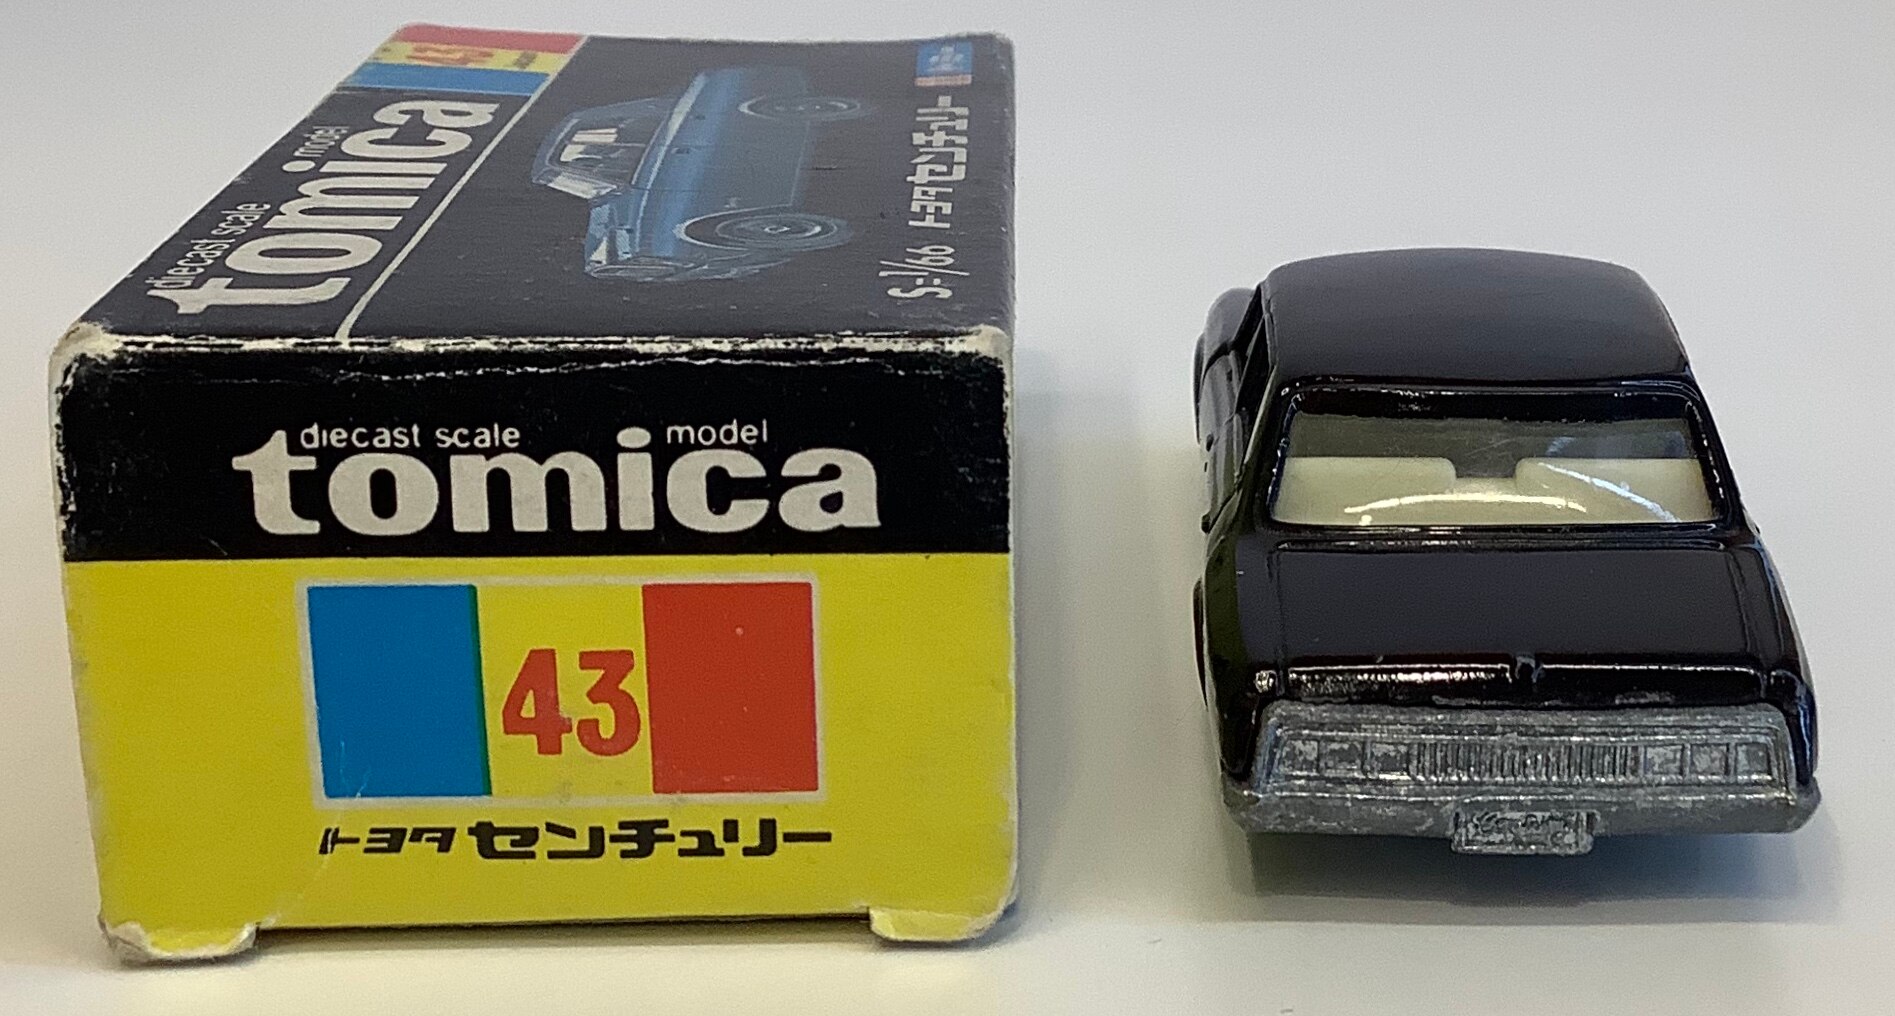 トミー トミカ黒箱日本製 トヨタセンチュリー/黒/白内装/1H 43-1-5